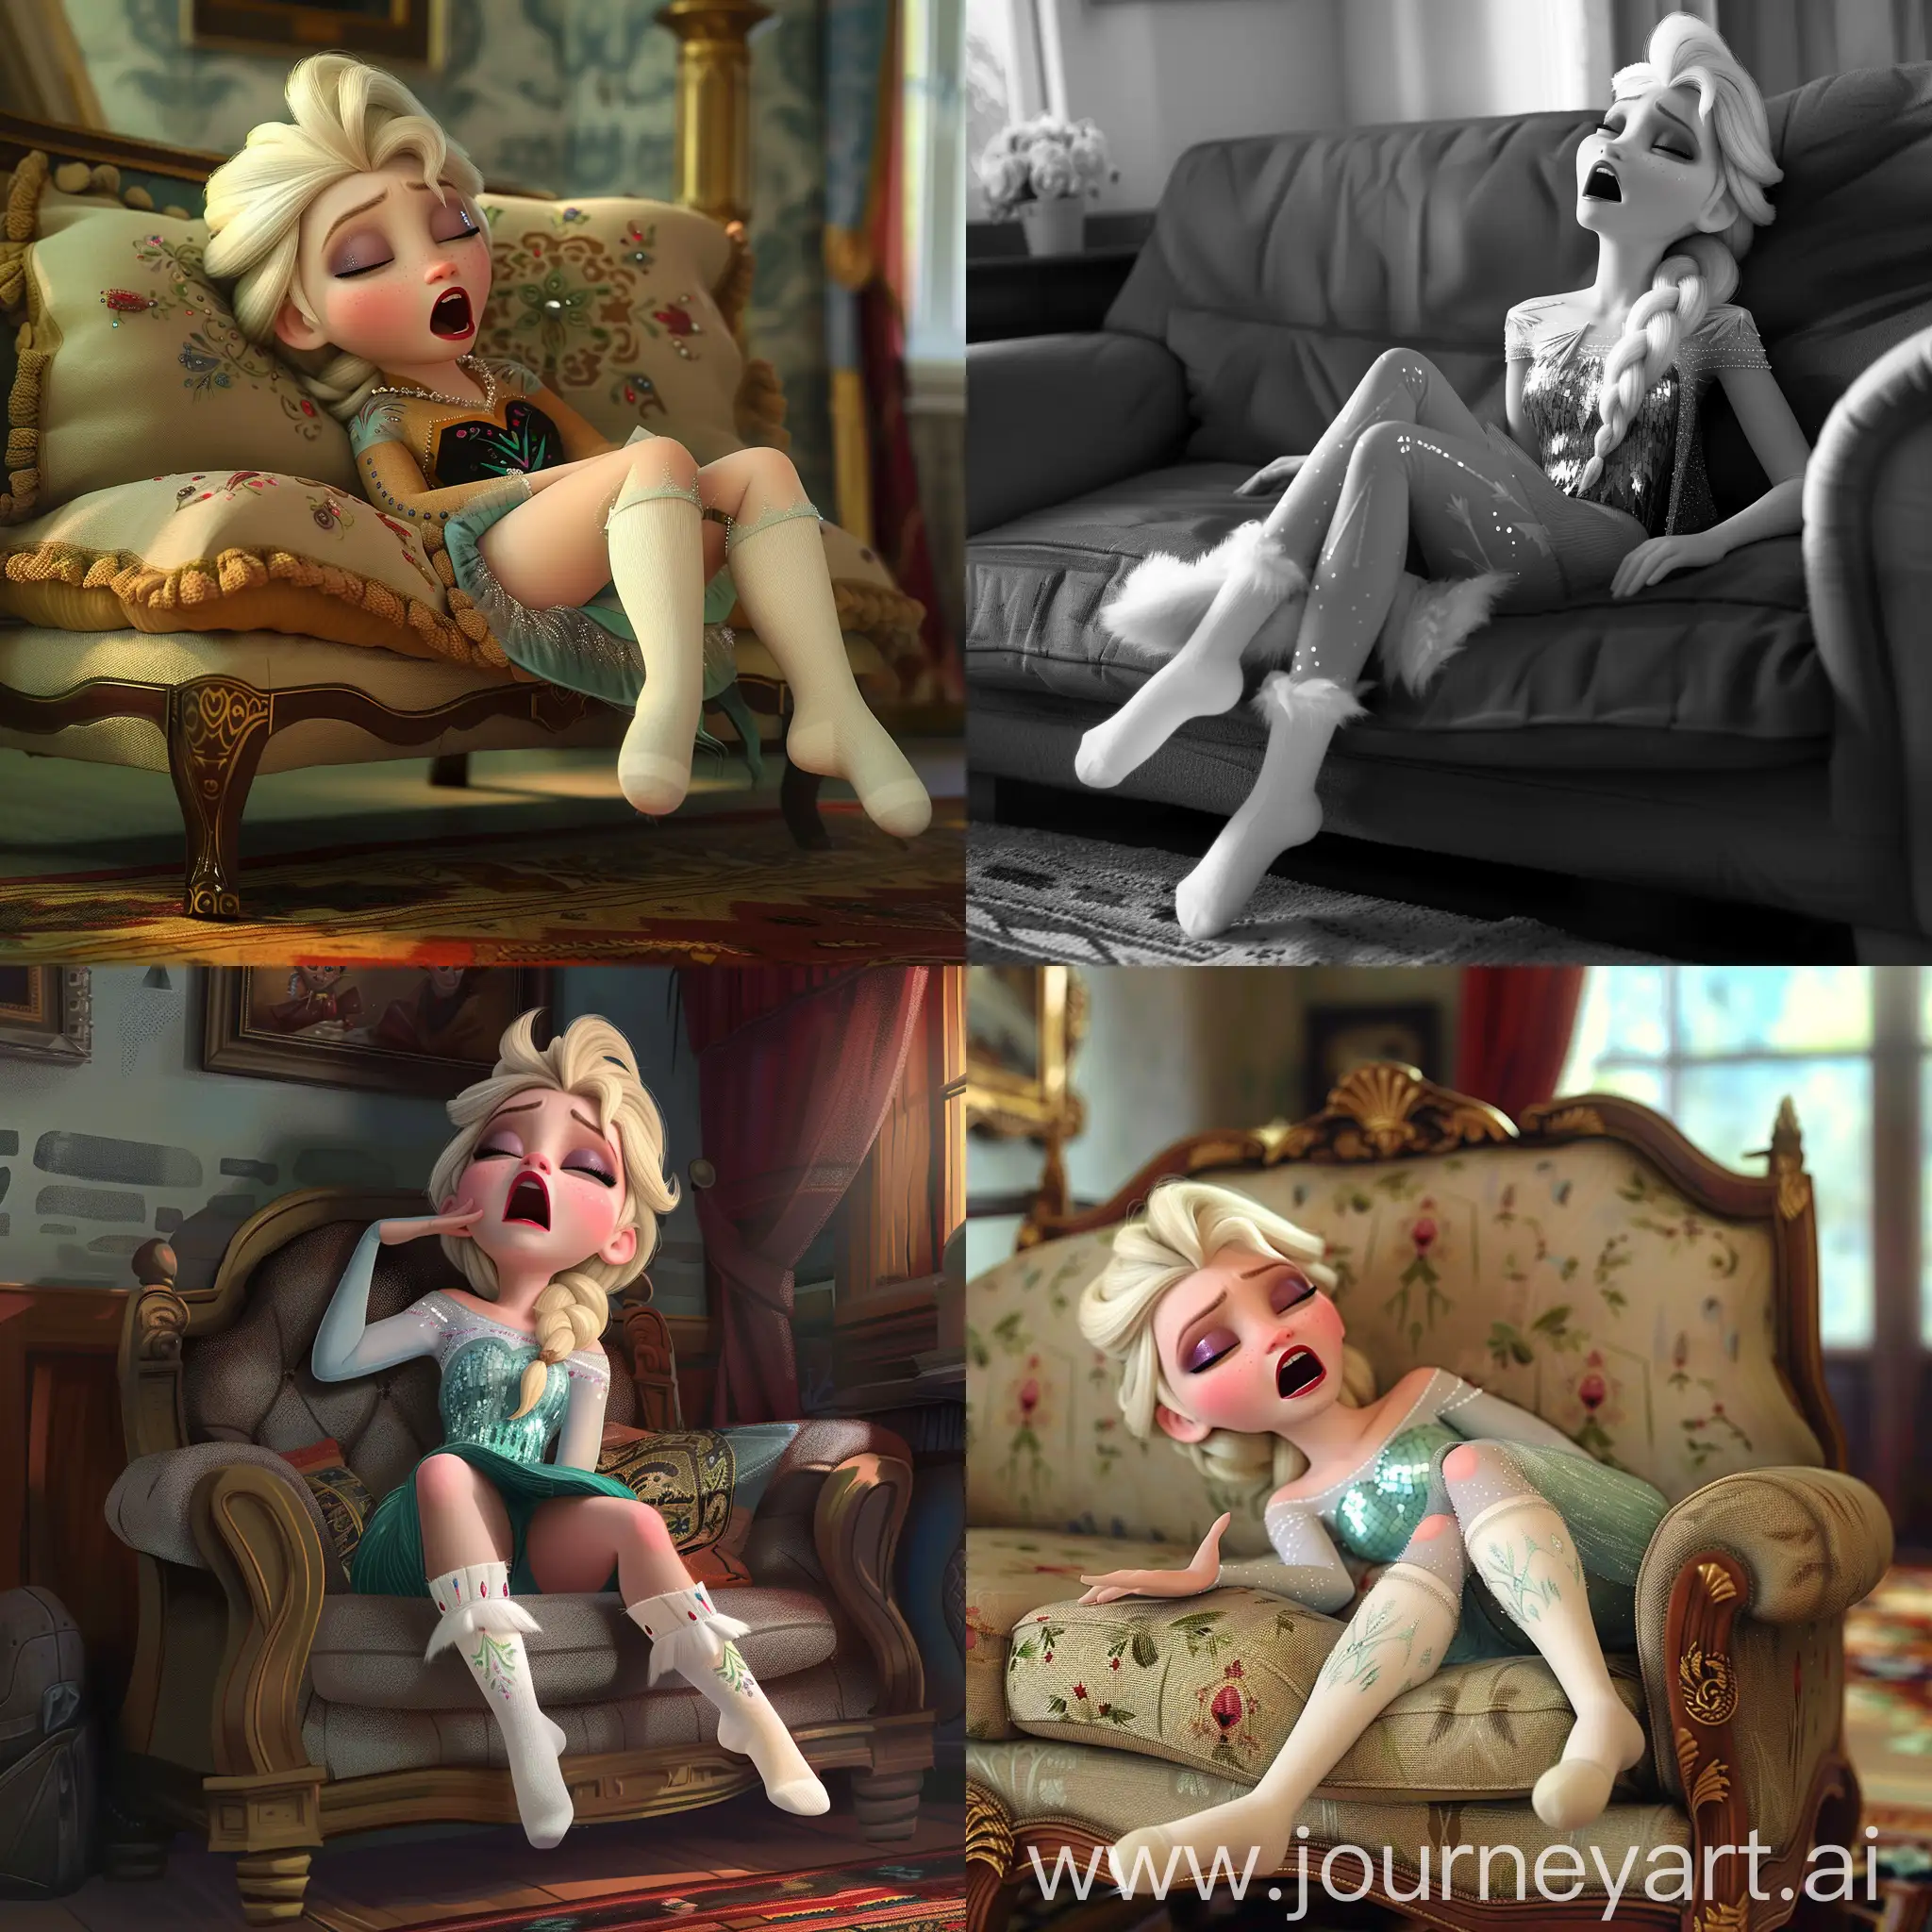 Elsa-from-Frozen-Sleeping-on-Sofa-in-White-Socks